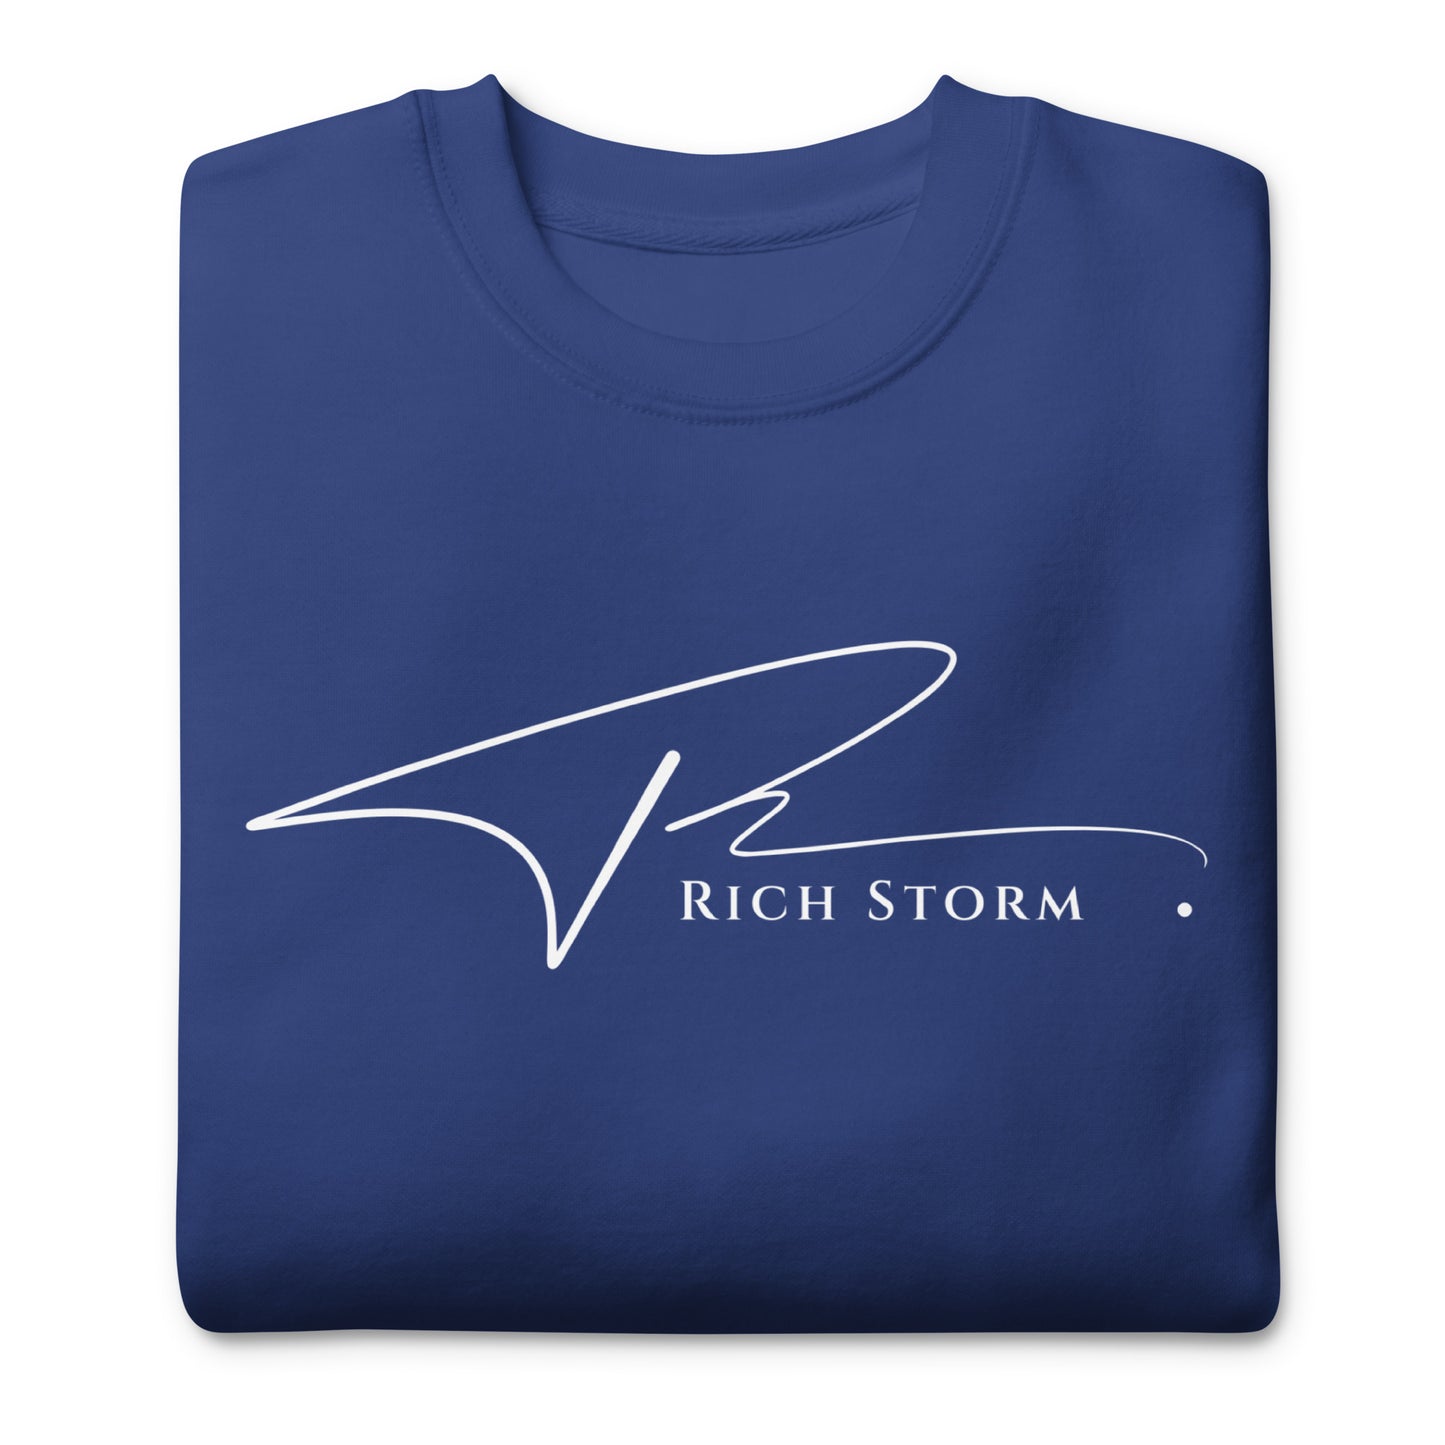 Rich Storm Premium Unisex Sweatshirt